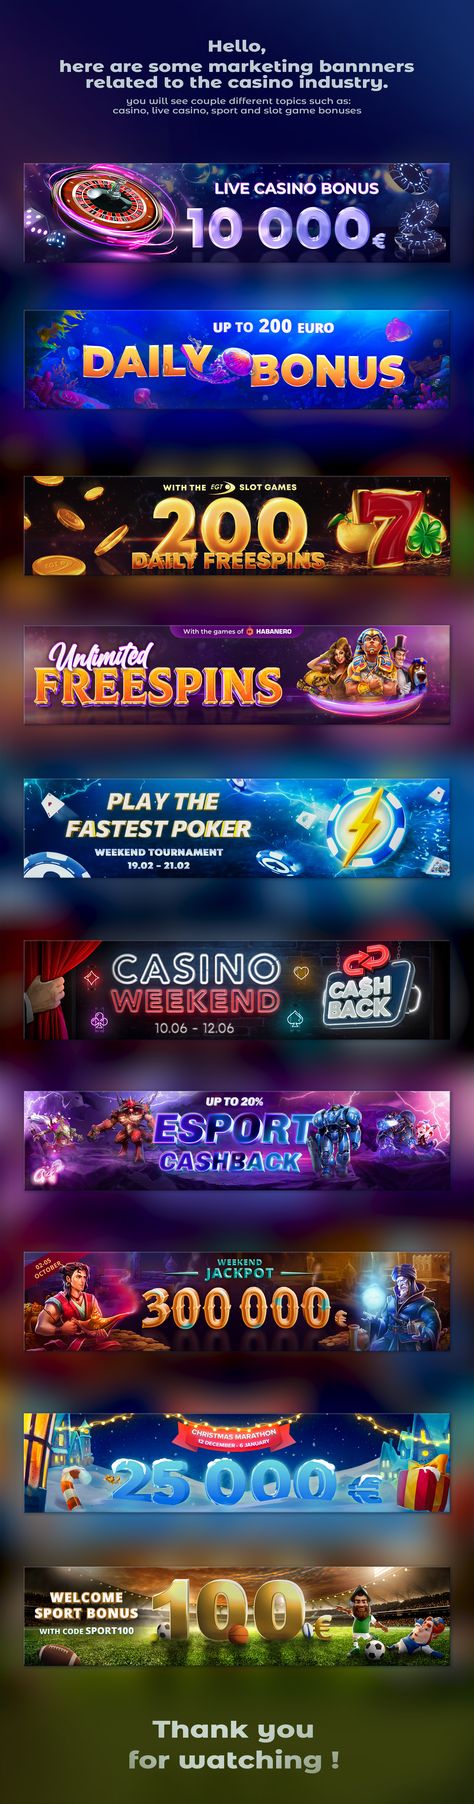 Slot & Casino Banners on Behance Casino Slot Games, Casino Bonus, Casino Slots, Online Casino, Slots Games, Jackpot Casino, Best Online Casino, Casino Promotion, Casino